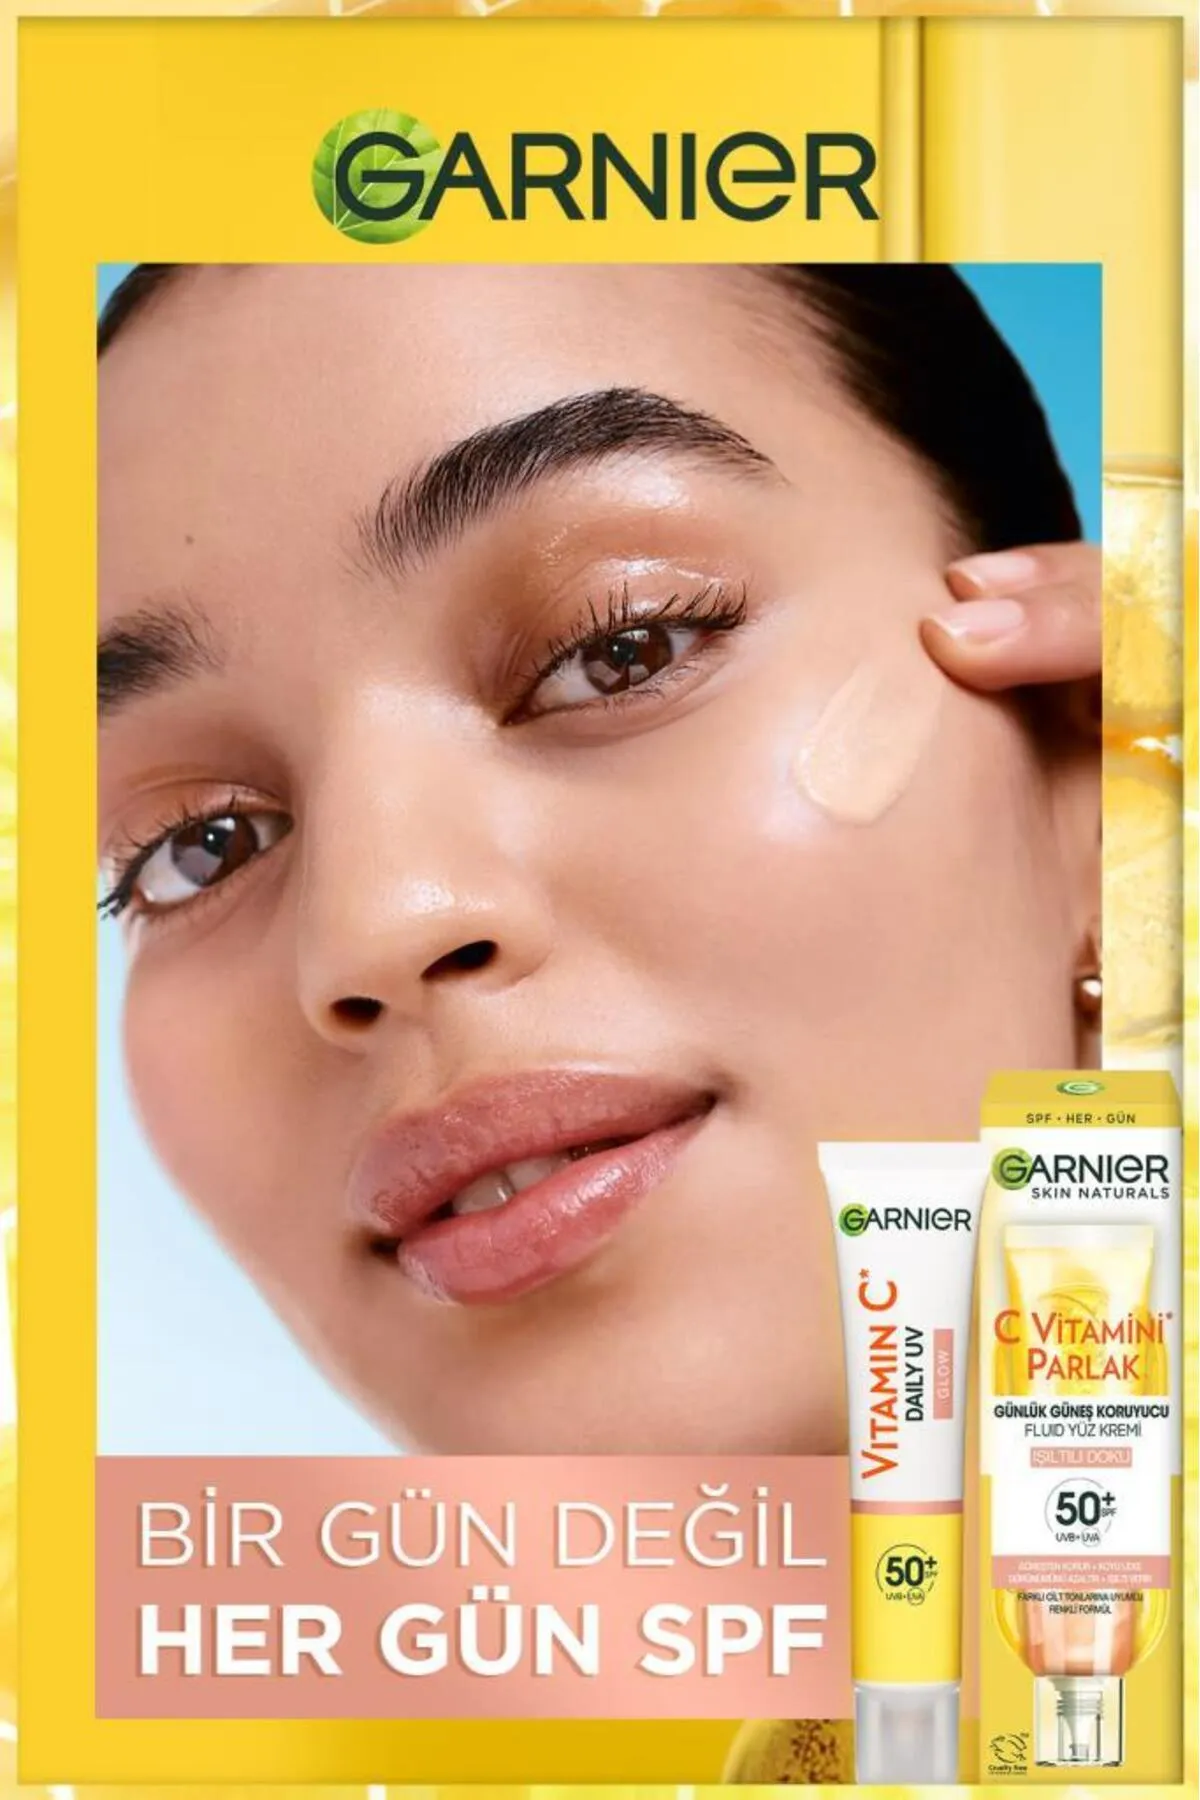 Garnier C Vitamini Parlak Işıltılı Doku Günlük Güneş Koruyucu Fluid Yüz Kremi 40 ml - Thumbnail